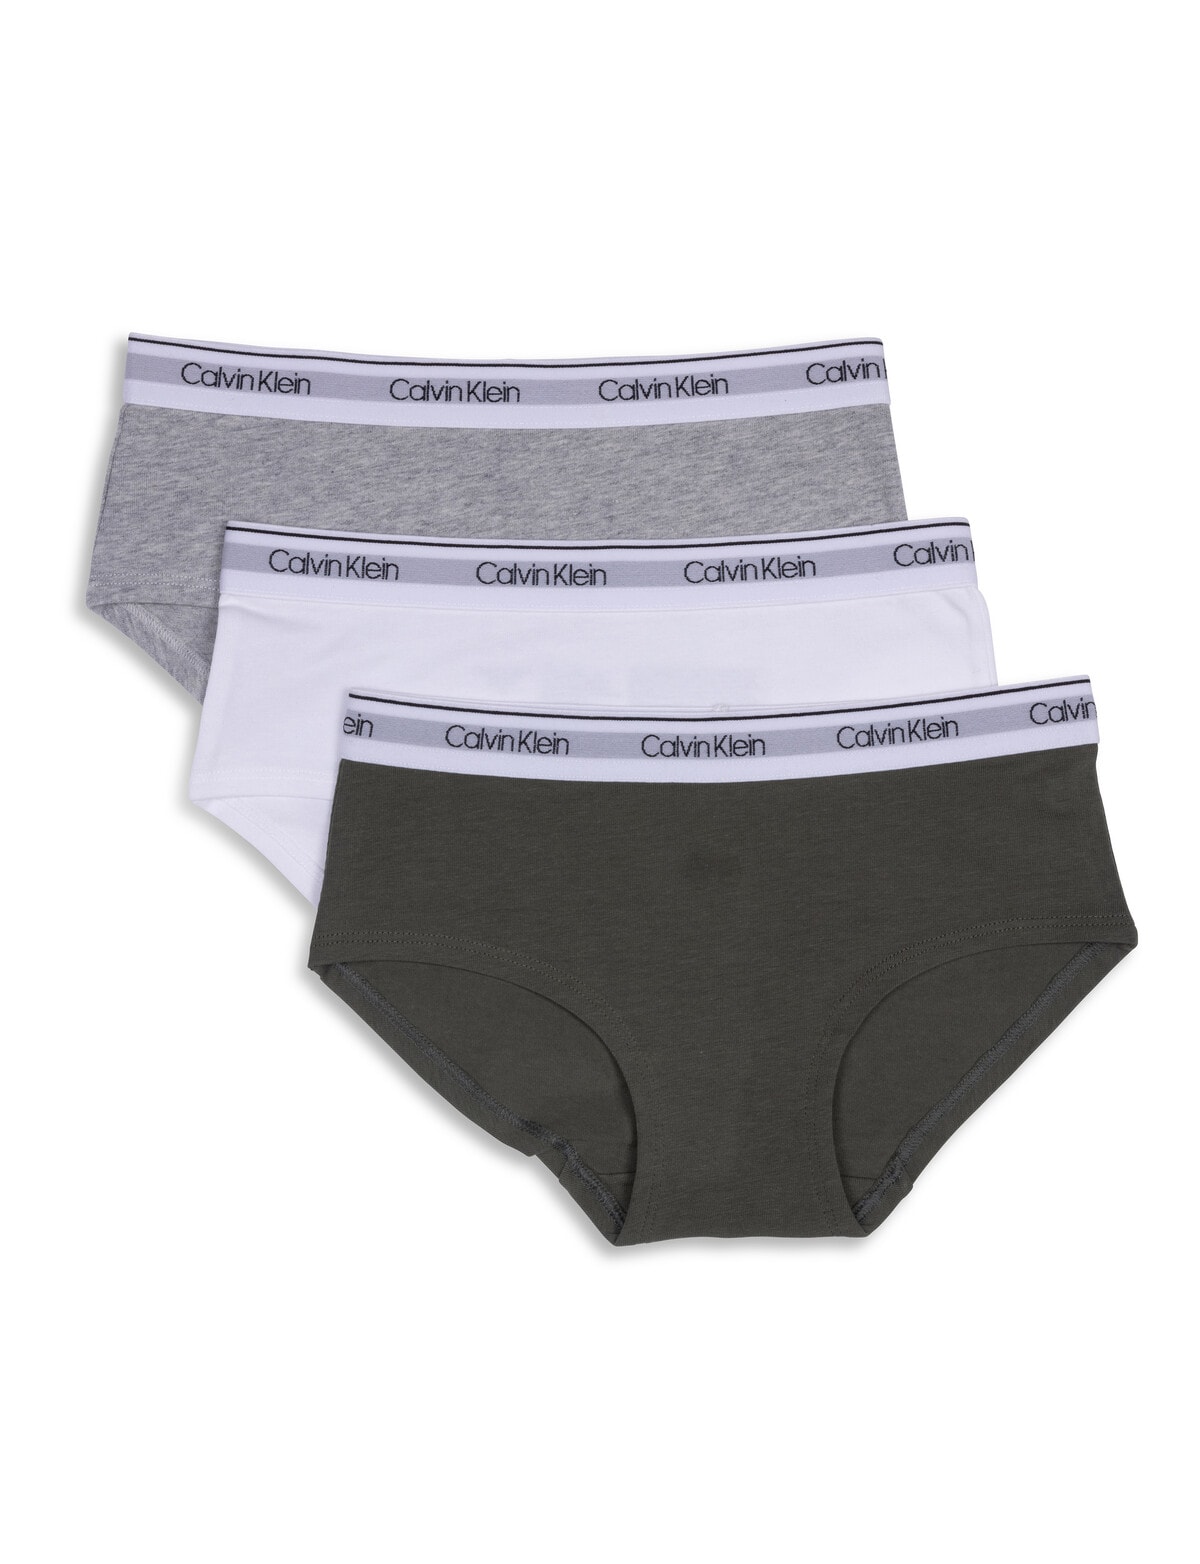 Calvin Klein Crop Top, 3-Pack, Thyme, White & Grey, S-XL - Underwear